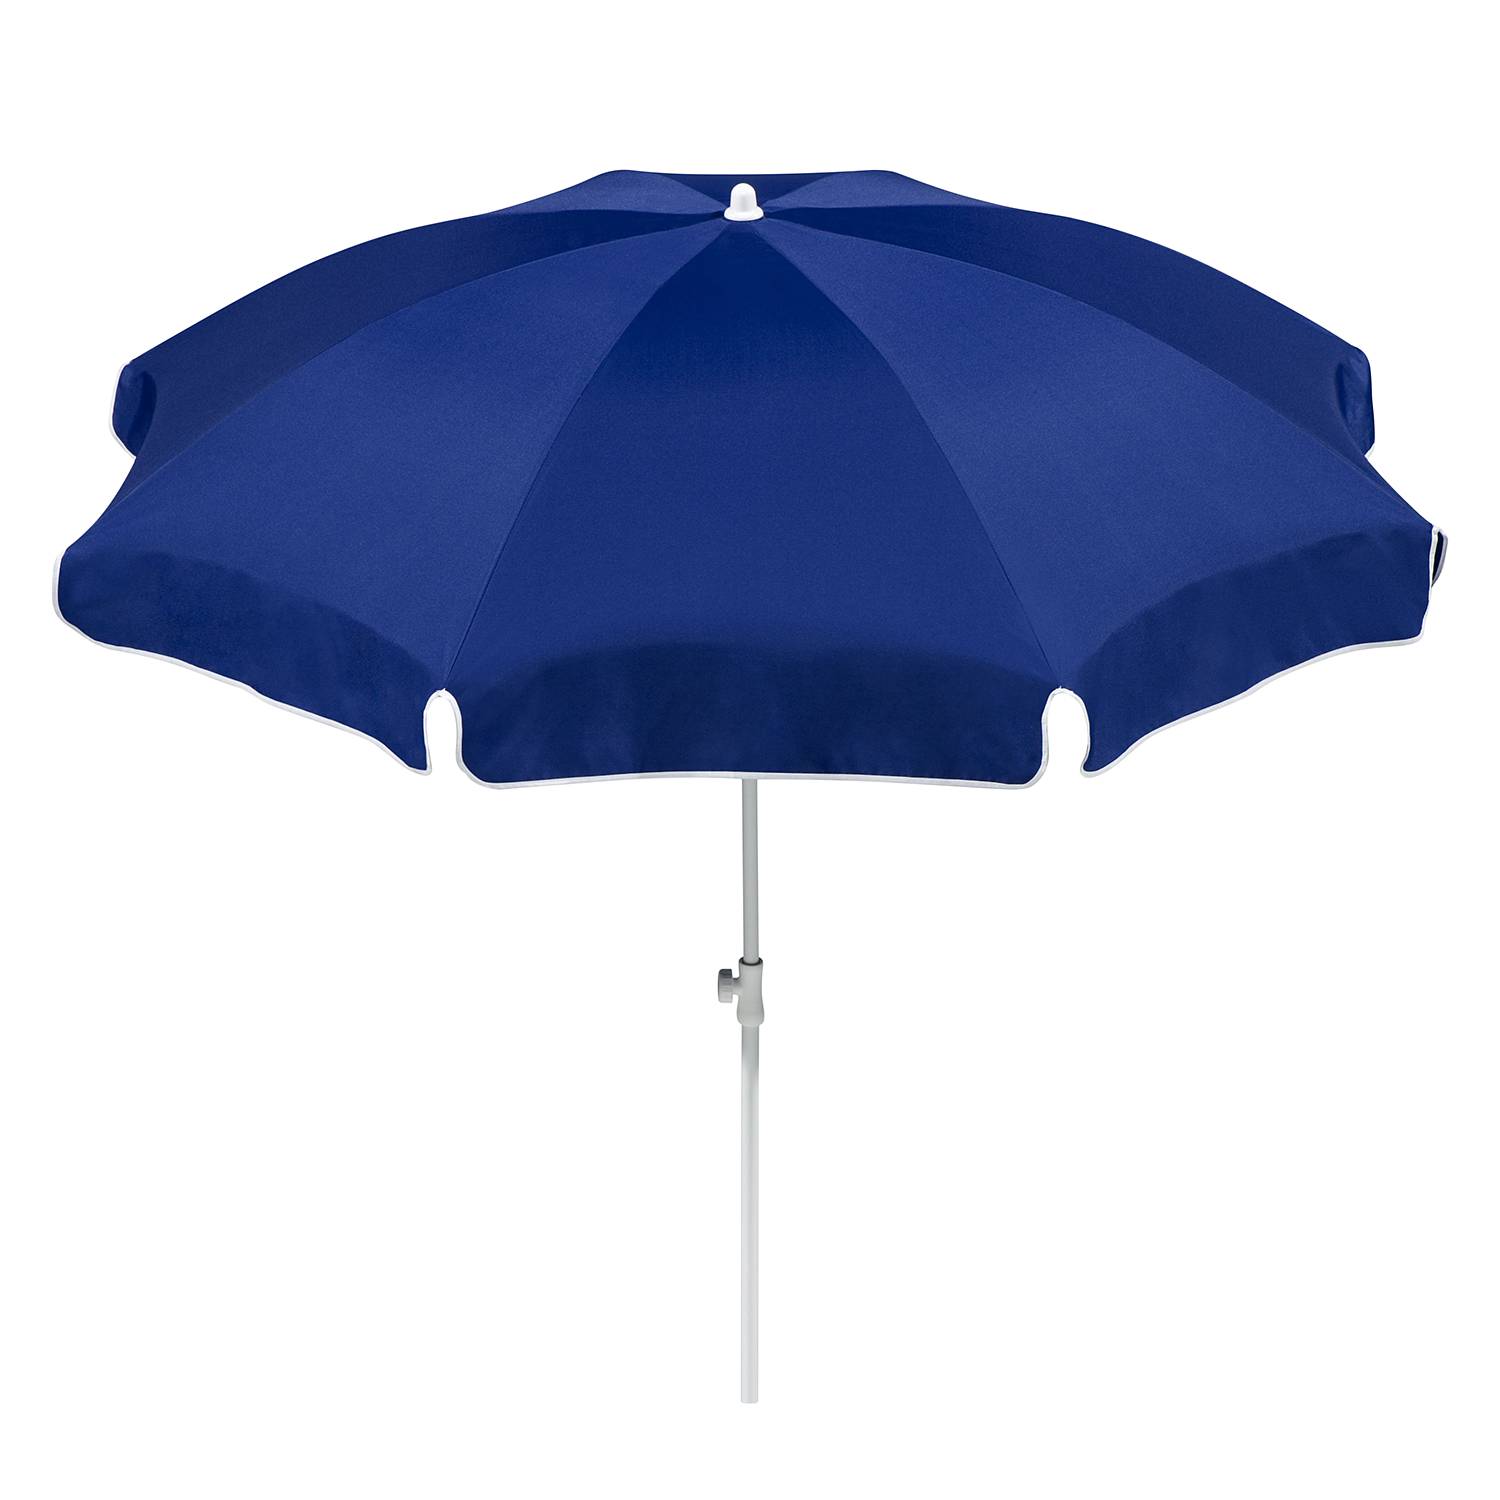 Sonnenschirm Ibiza - Stahl/Polyester - Weiß/Blau - Durchmesser: 200 cm, Schneider Schirme